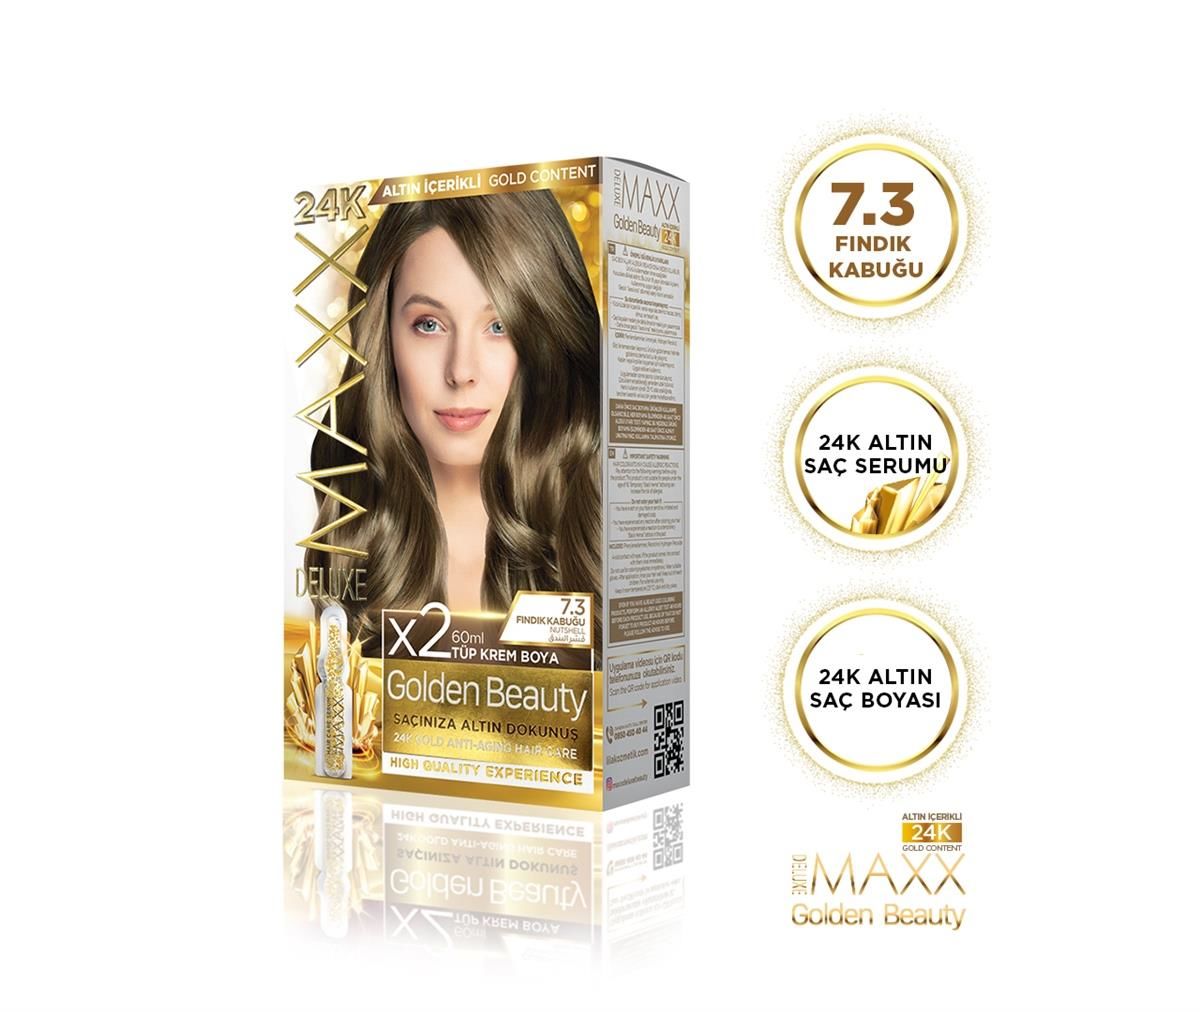 MAXX DELUXE Golden 24K Altın Içerikli Saç Boyası 7.3 Fındık Kabuğu 2 Boyama